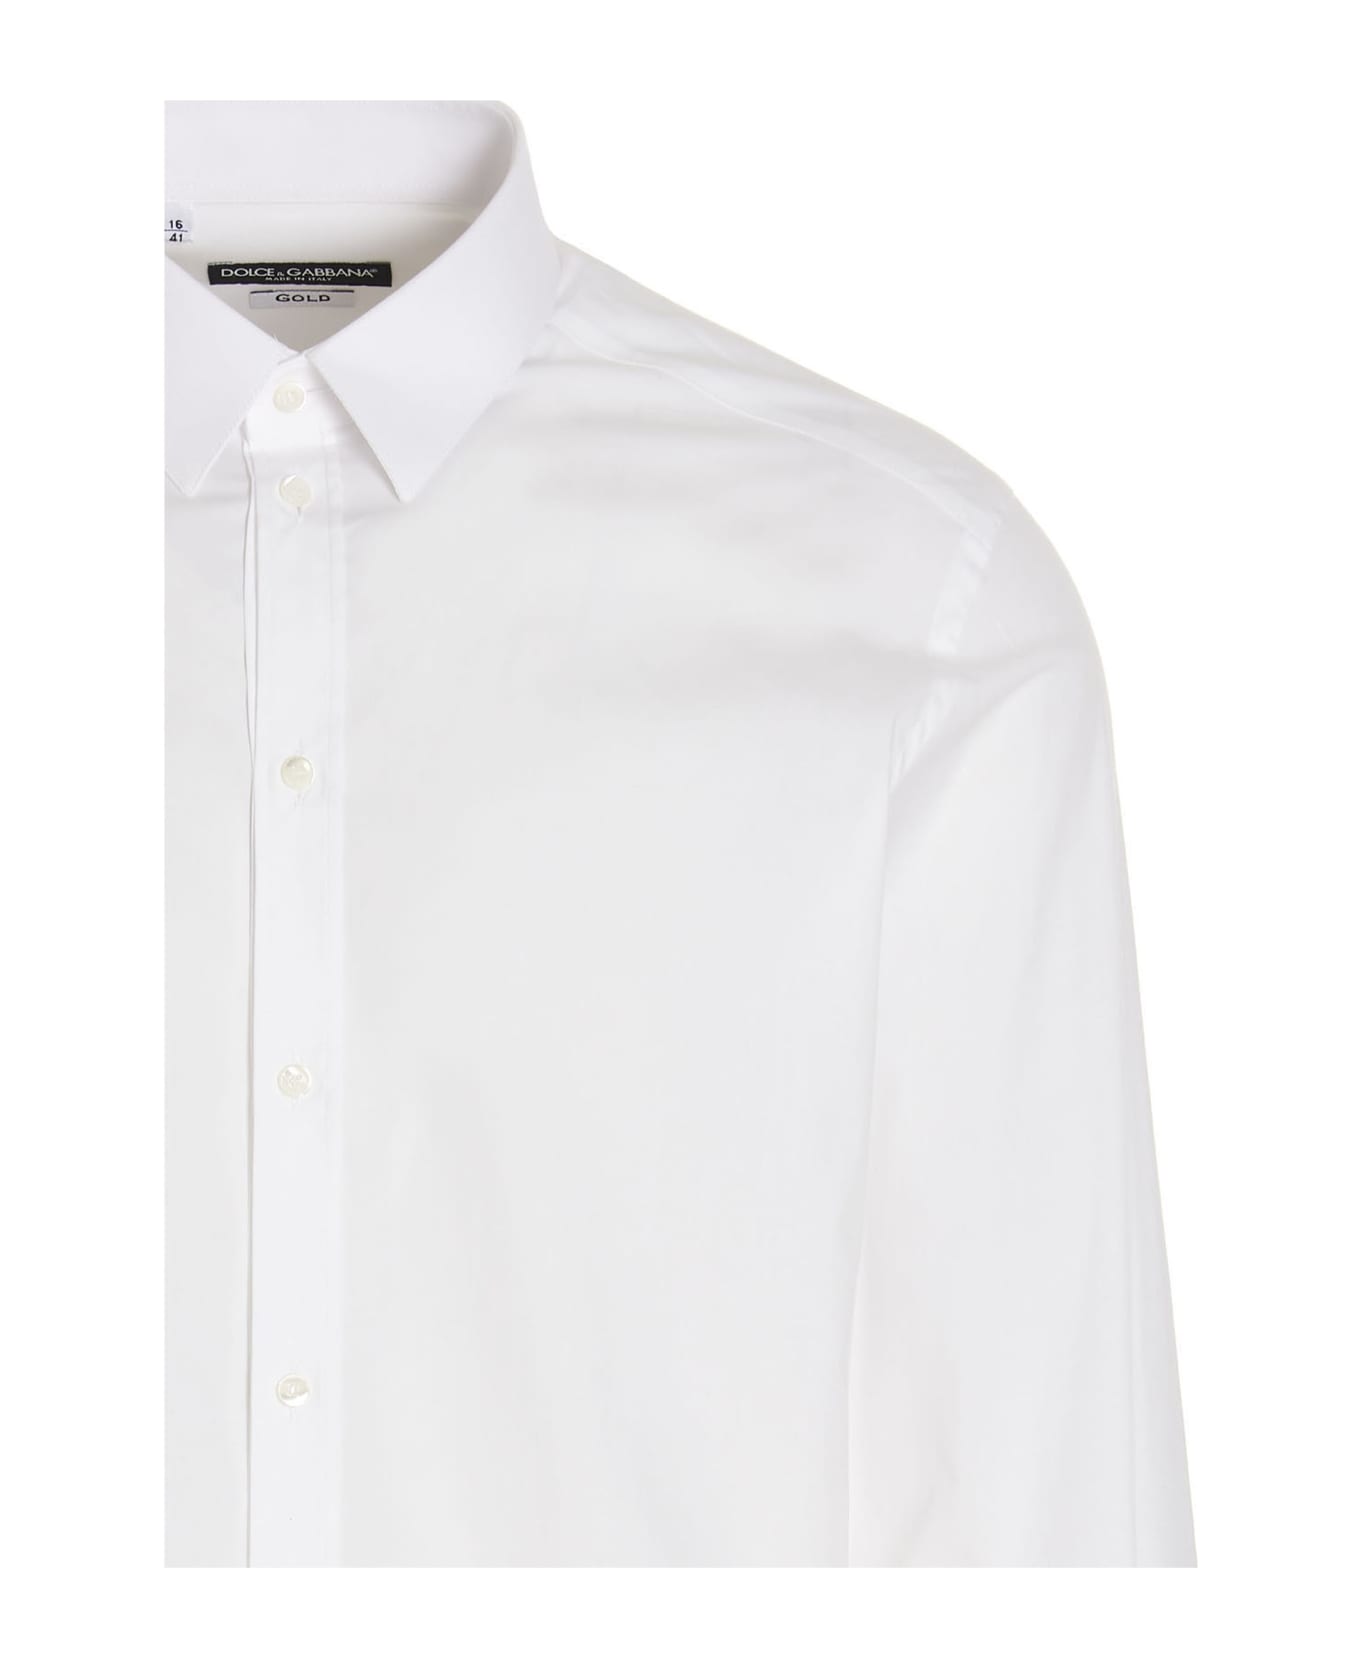 Dolce & Gabbana Poplin Shirt - White